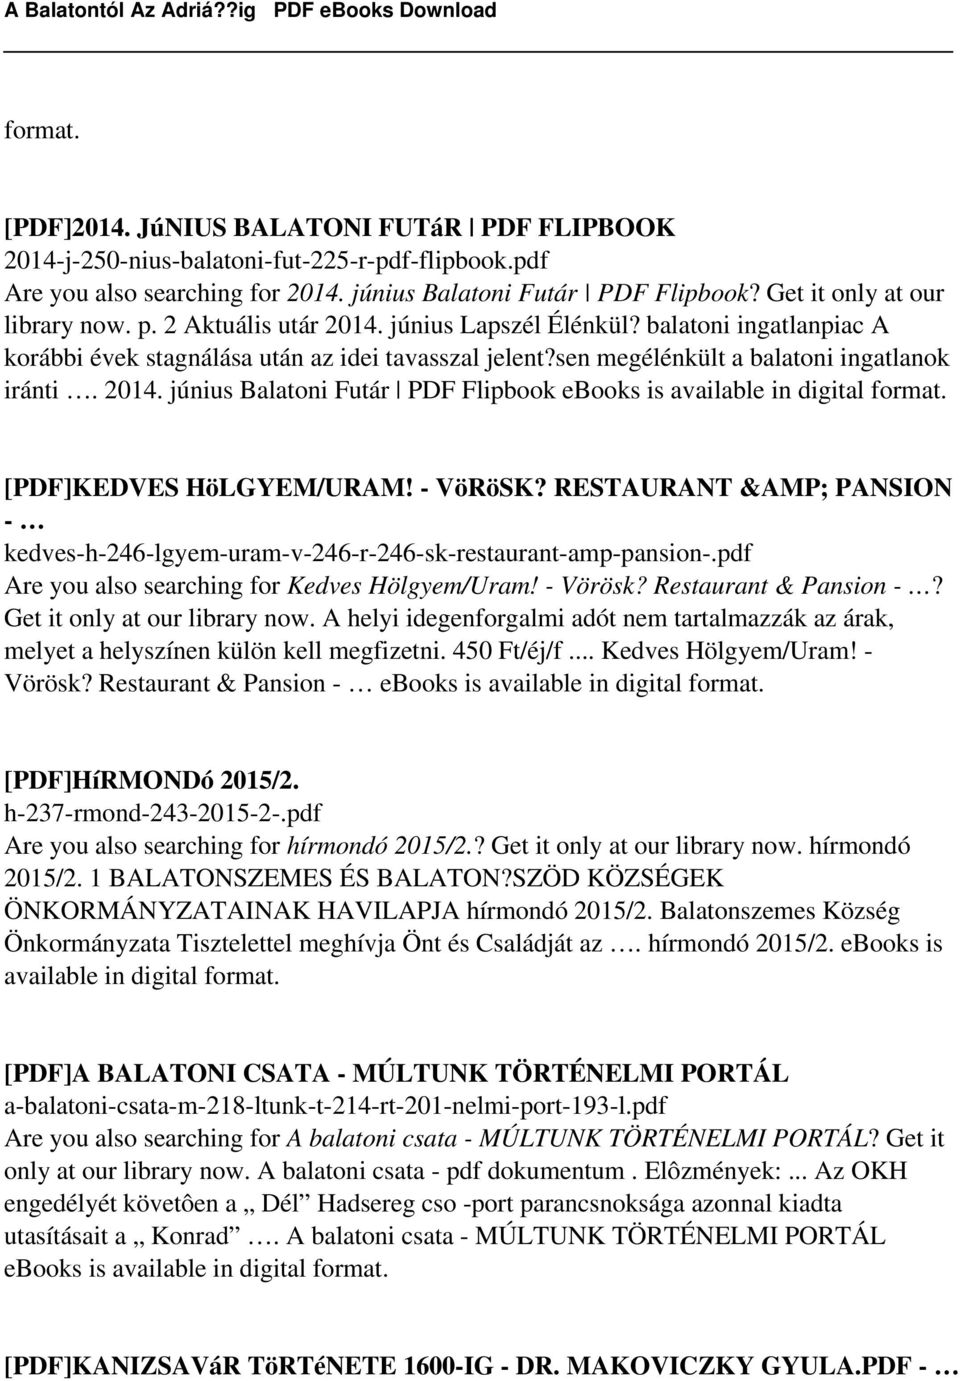 sen megélénkült a balatoni ingatlanok iránti. 2014. június Balatoni Futár PDF Flipbook [PDF]KEDVES HöLGYEM/URAM! - VöRöSK?